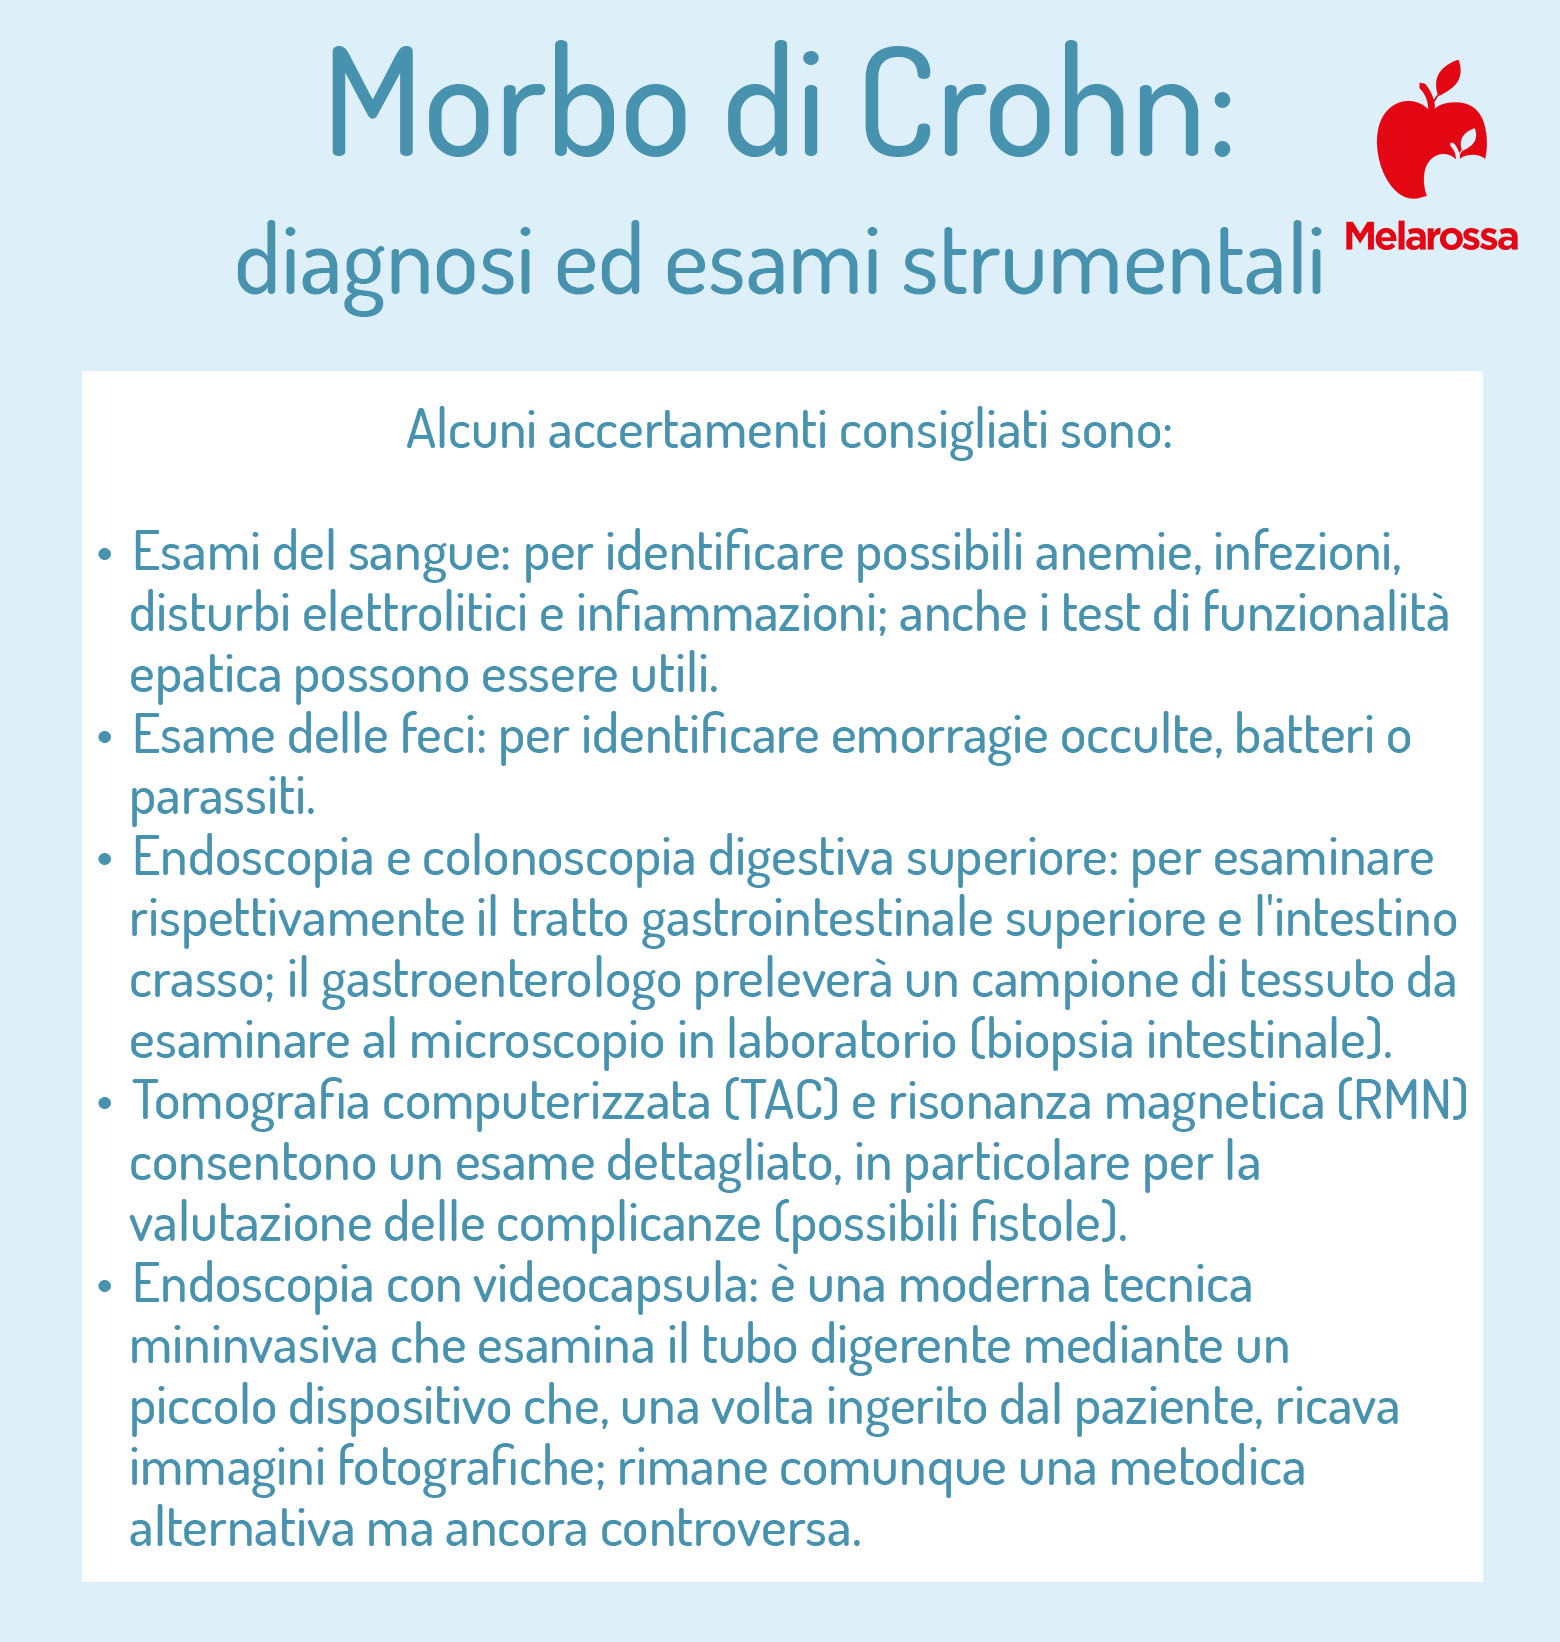 Morbo di Crohn: esami da fare 